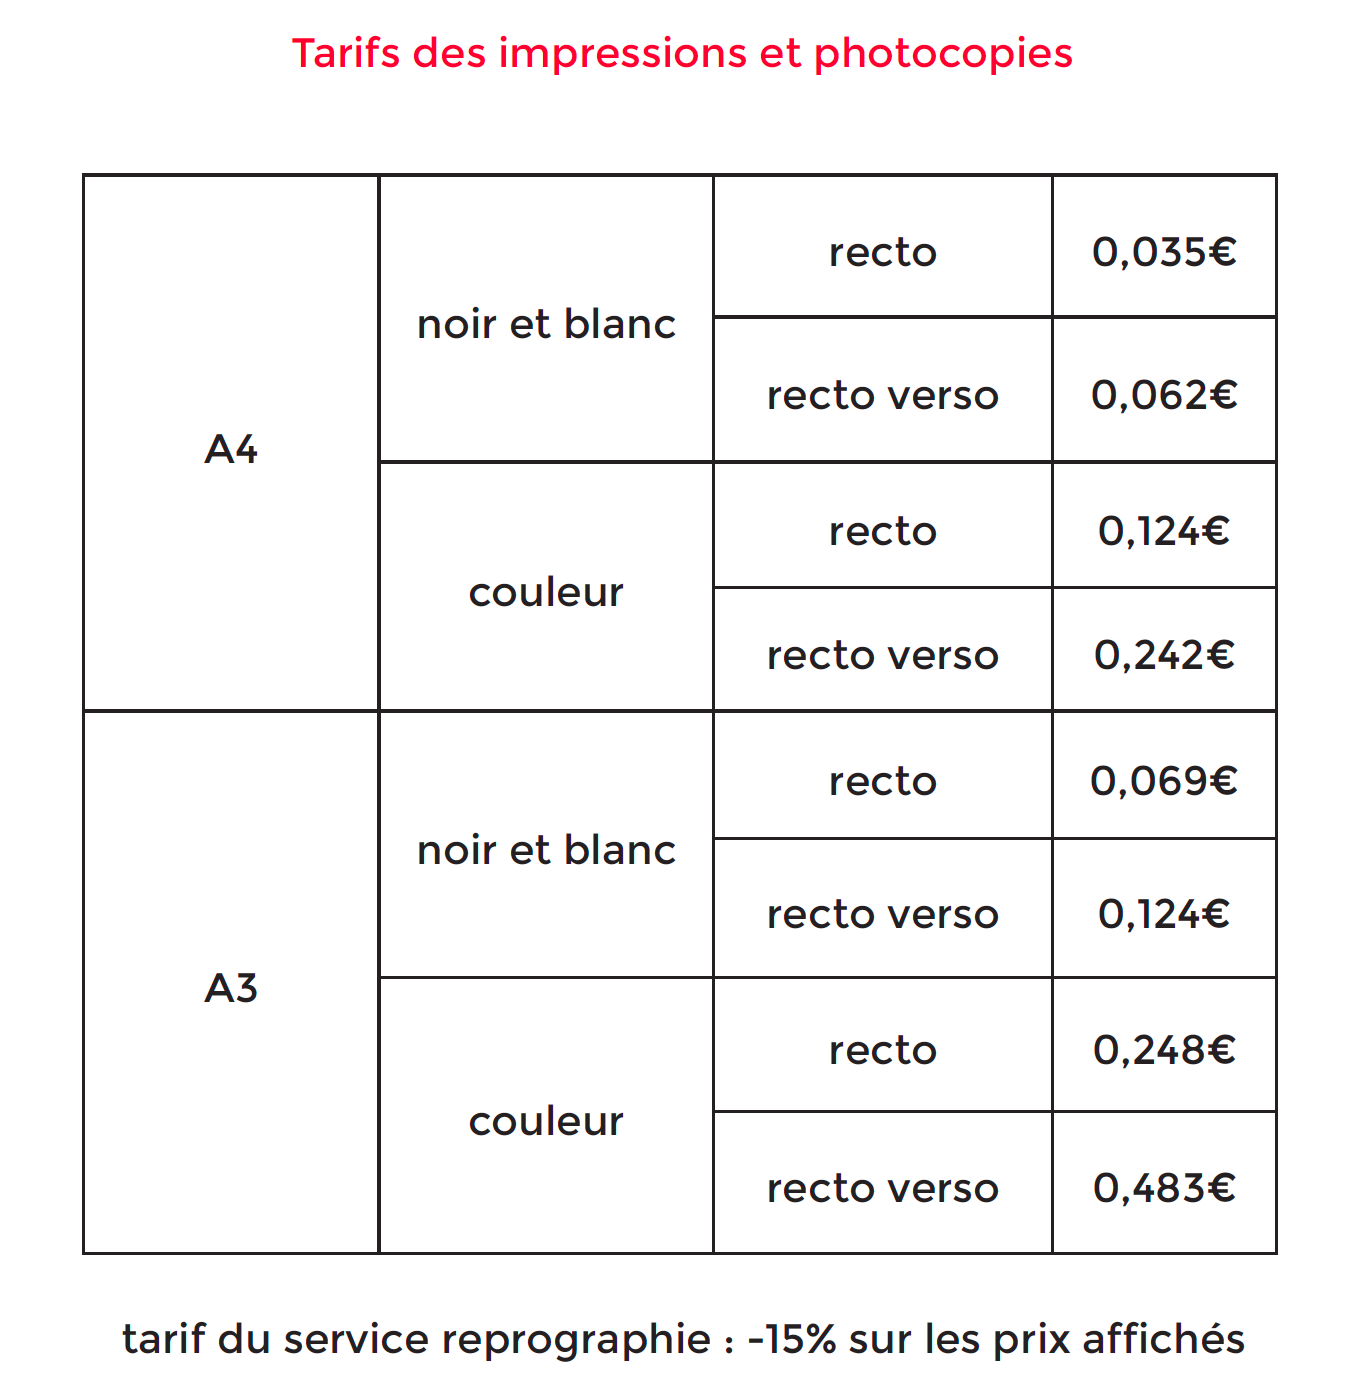 tarifs_impressions.png